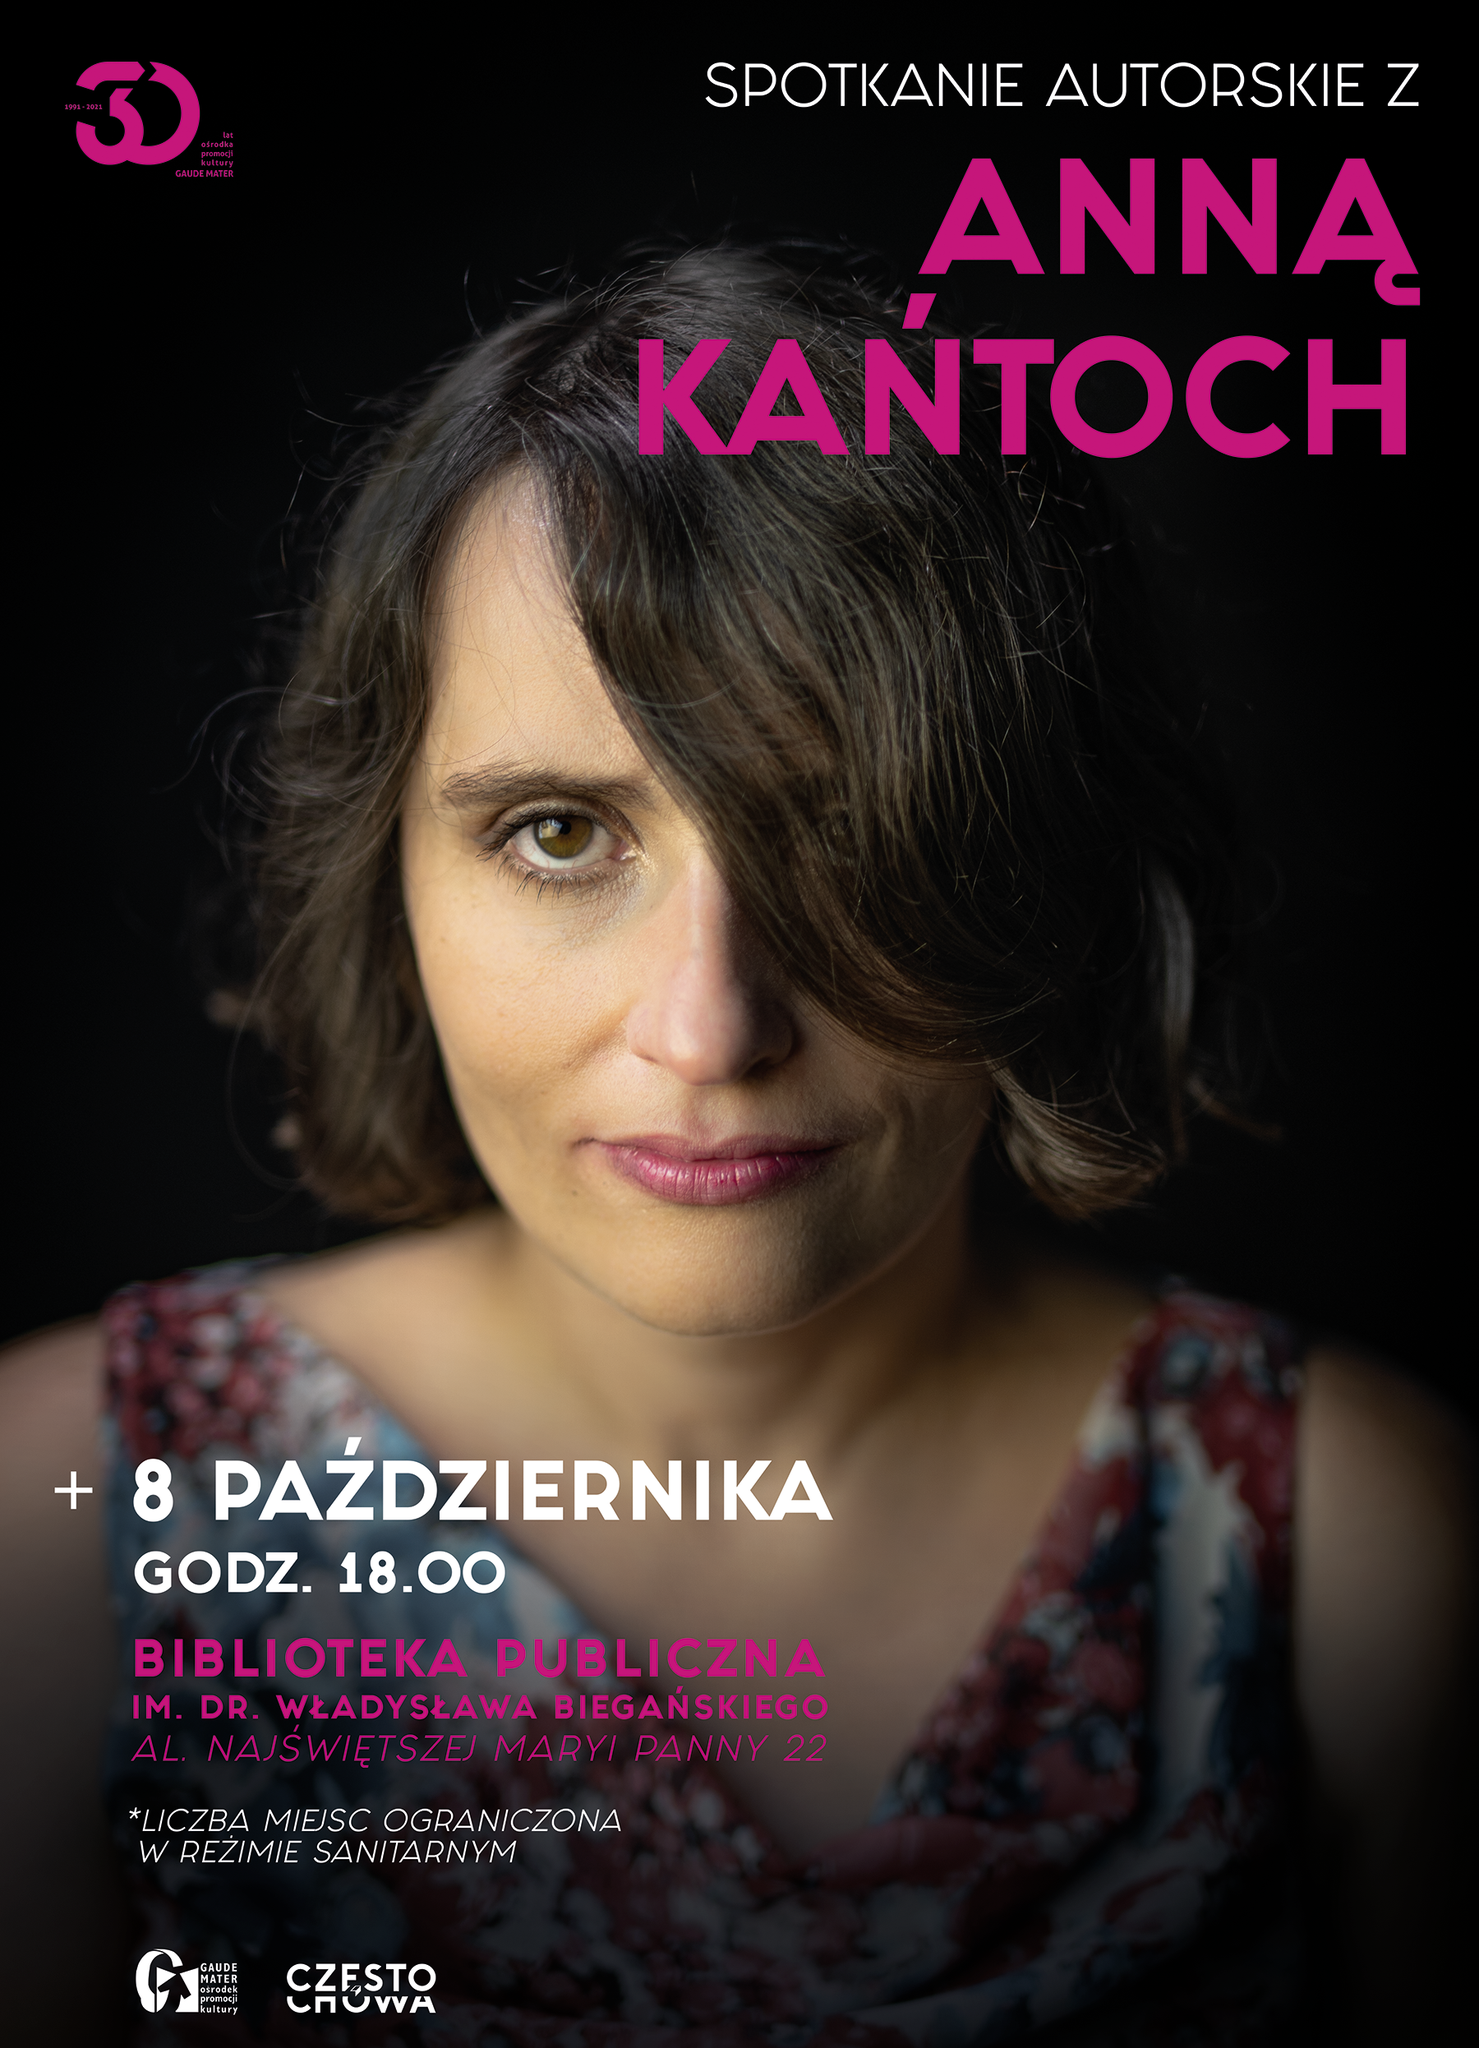 plakat ze zdjęciem Anny Kańtoch zapowiadający spotkanie